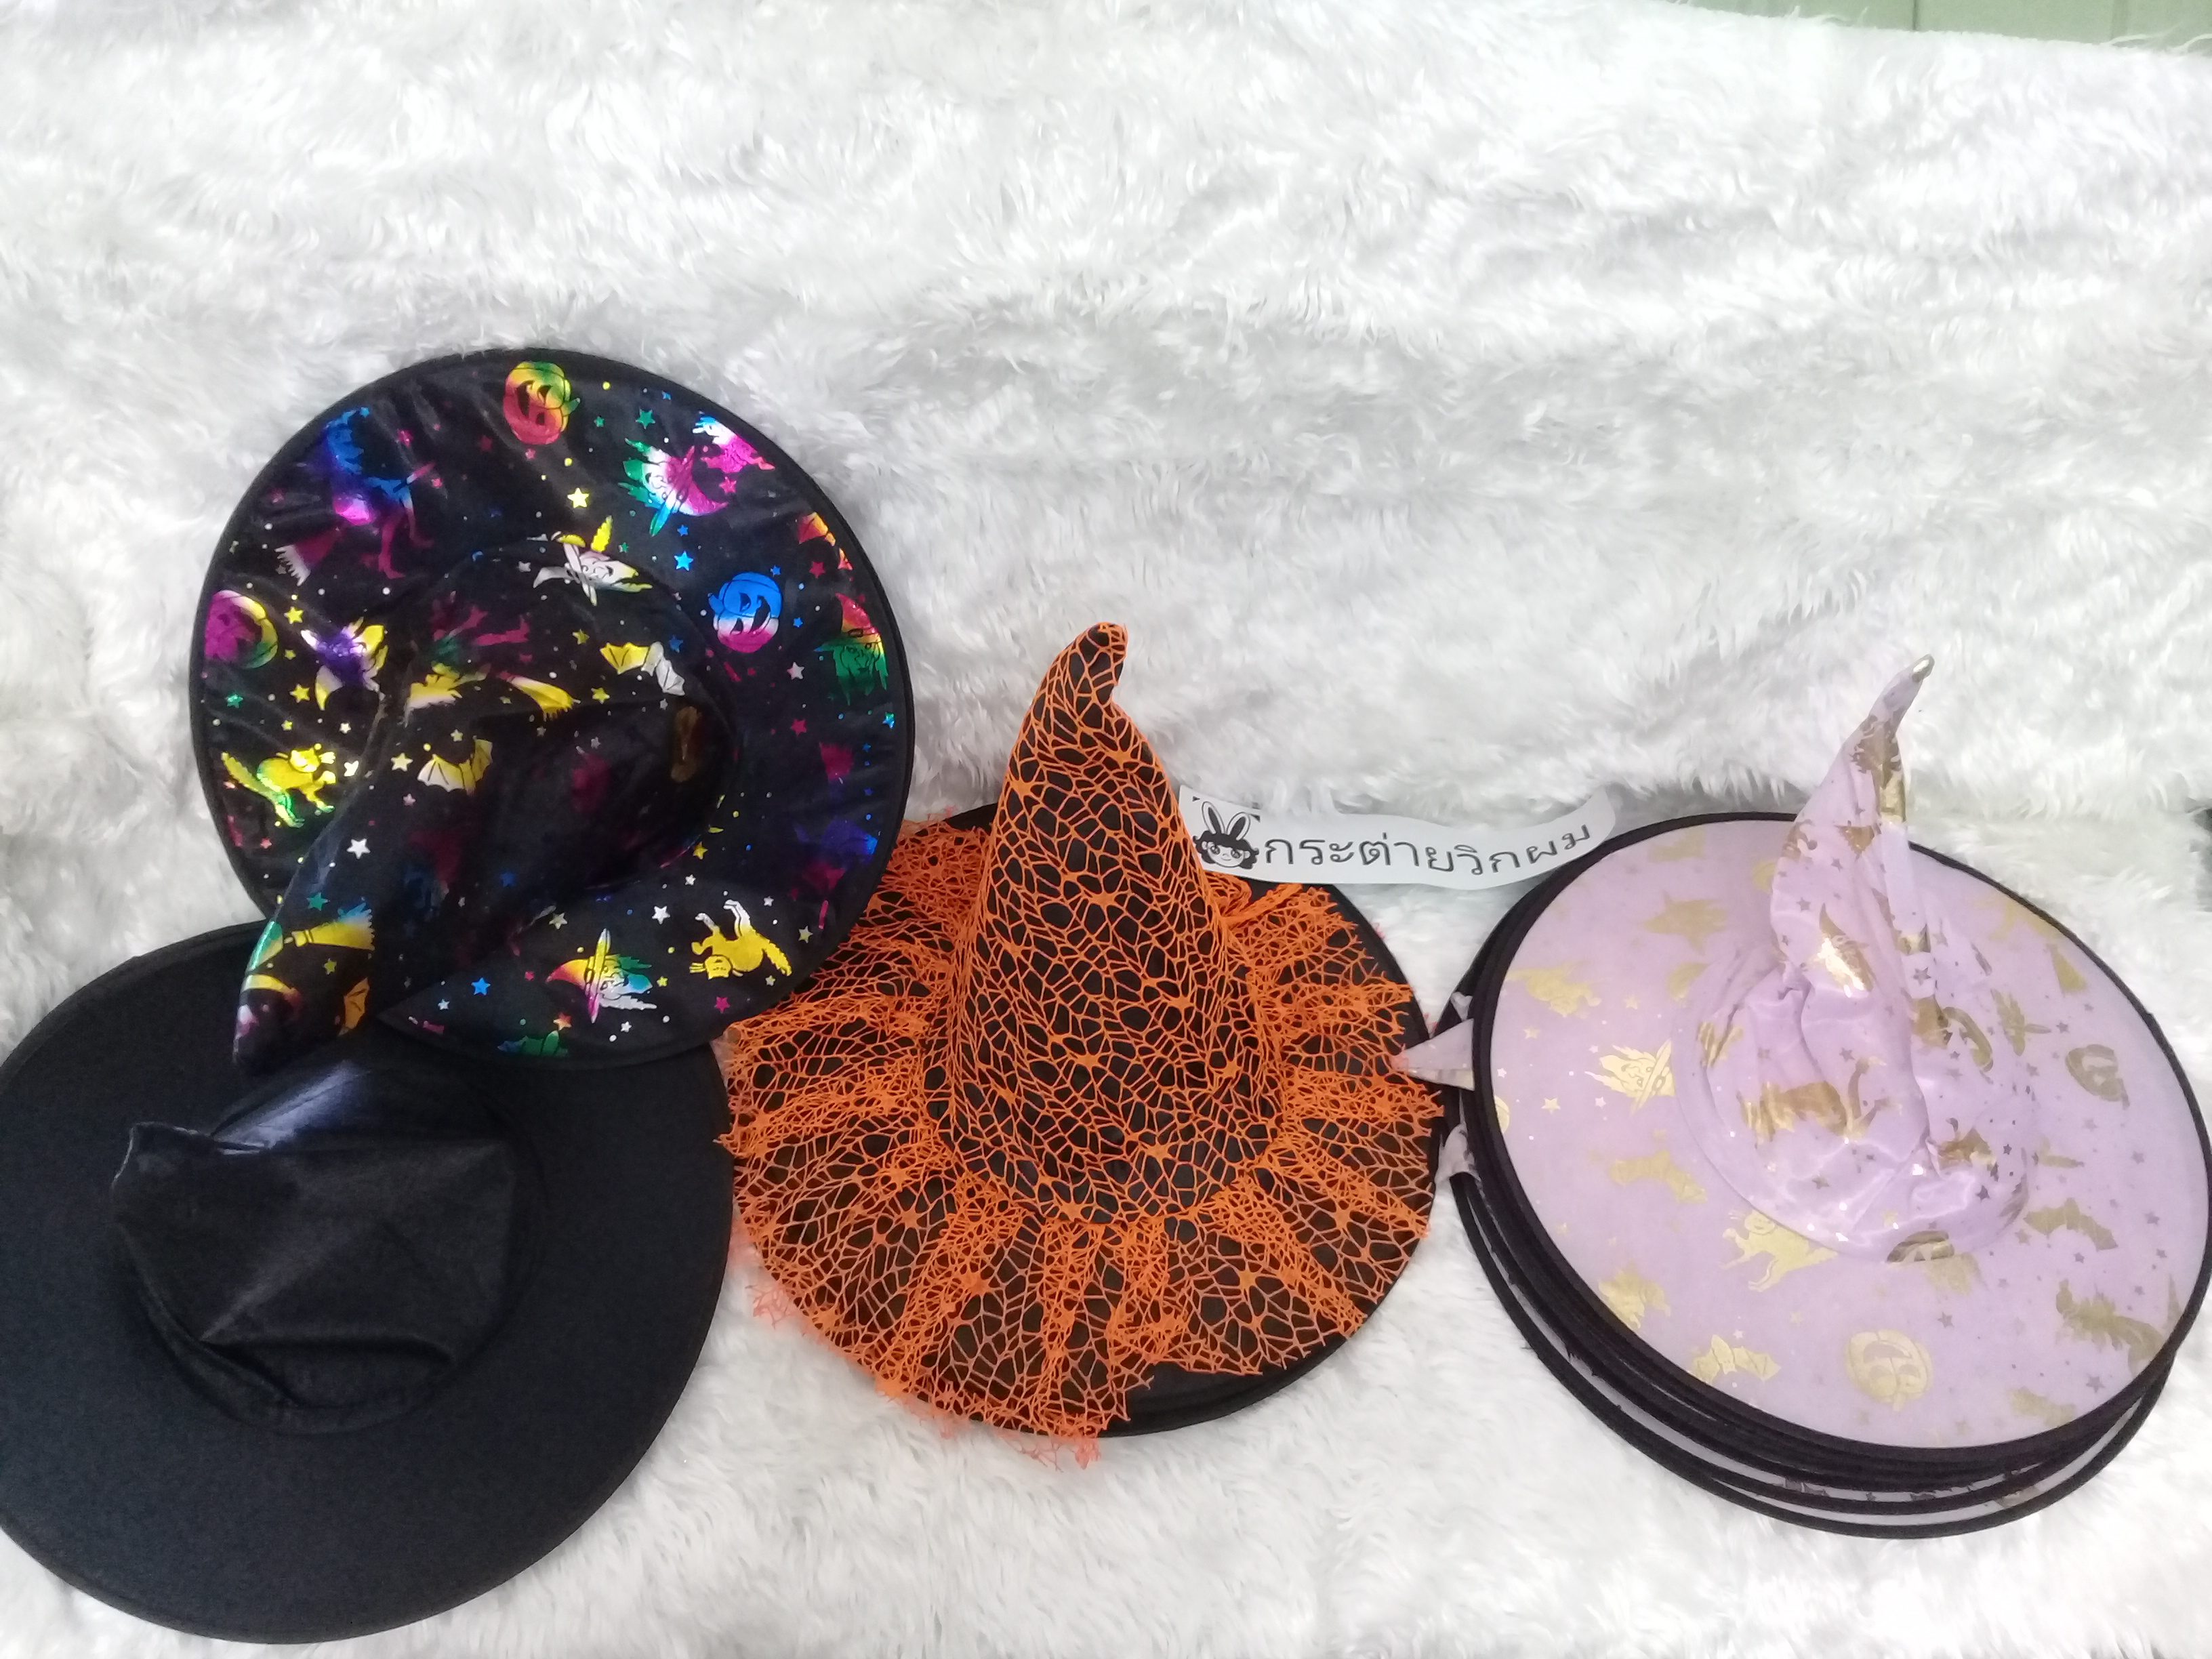 หมวกแม่มด หมวกพ่อมด หมวกแฟนซี  มีหลายสีให้เลือก สินค้าพร้อมส่งในไทย สั่งซื้อสอบถามแม่ค้าได้ค่า